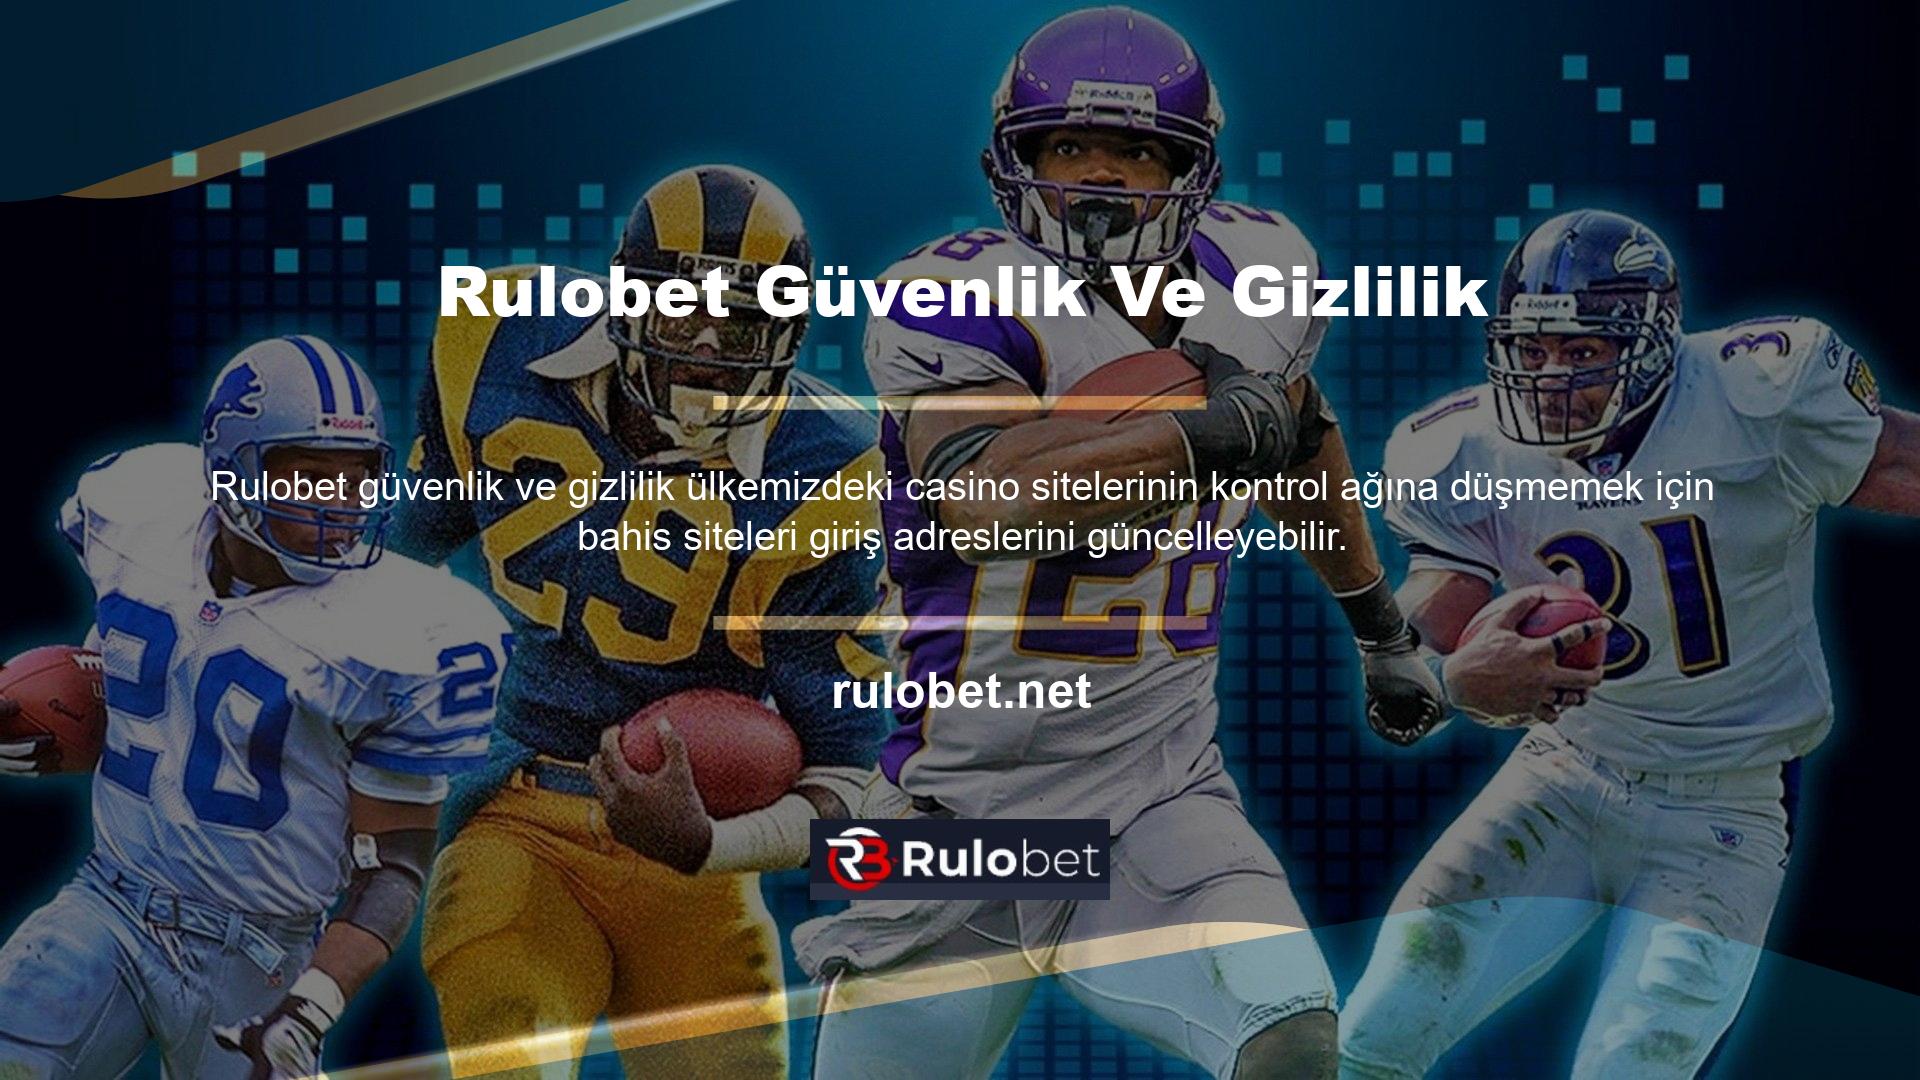 Rulobet bahis sitesi, takipçilerini bilgilendirmek amacıyla güncellenen domain adresini Rulobet Twitter'da paylaştı